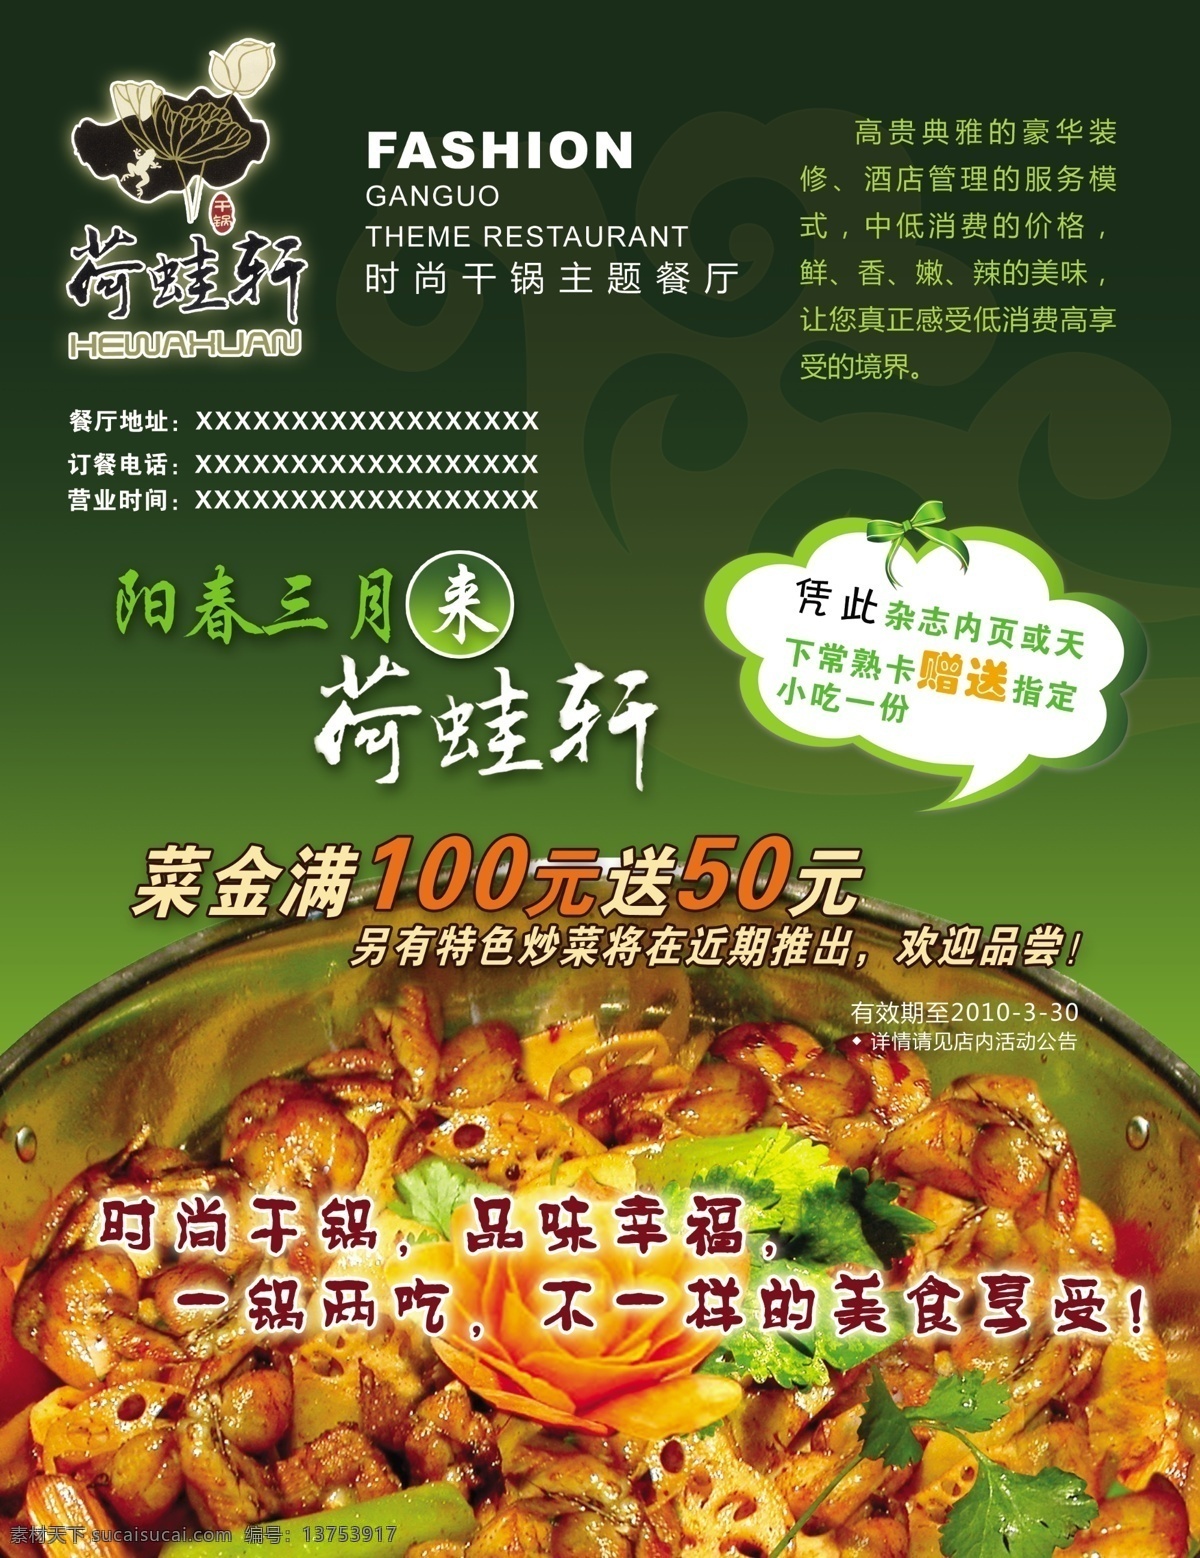 绿色 调 酒店 美食 海报 psd素材 美食海报 食物 绿色调海报 其他海报设计